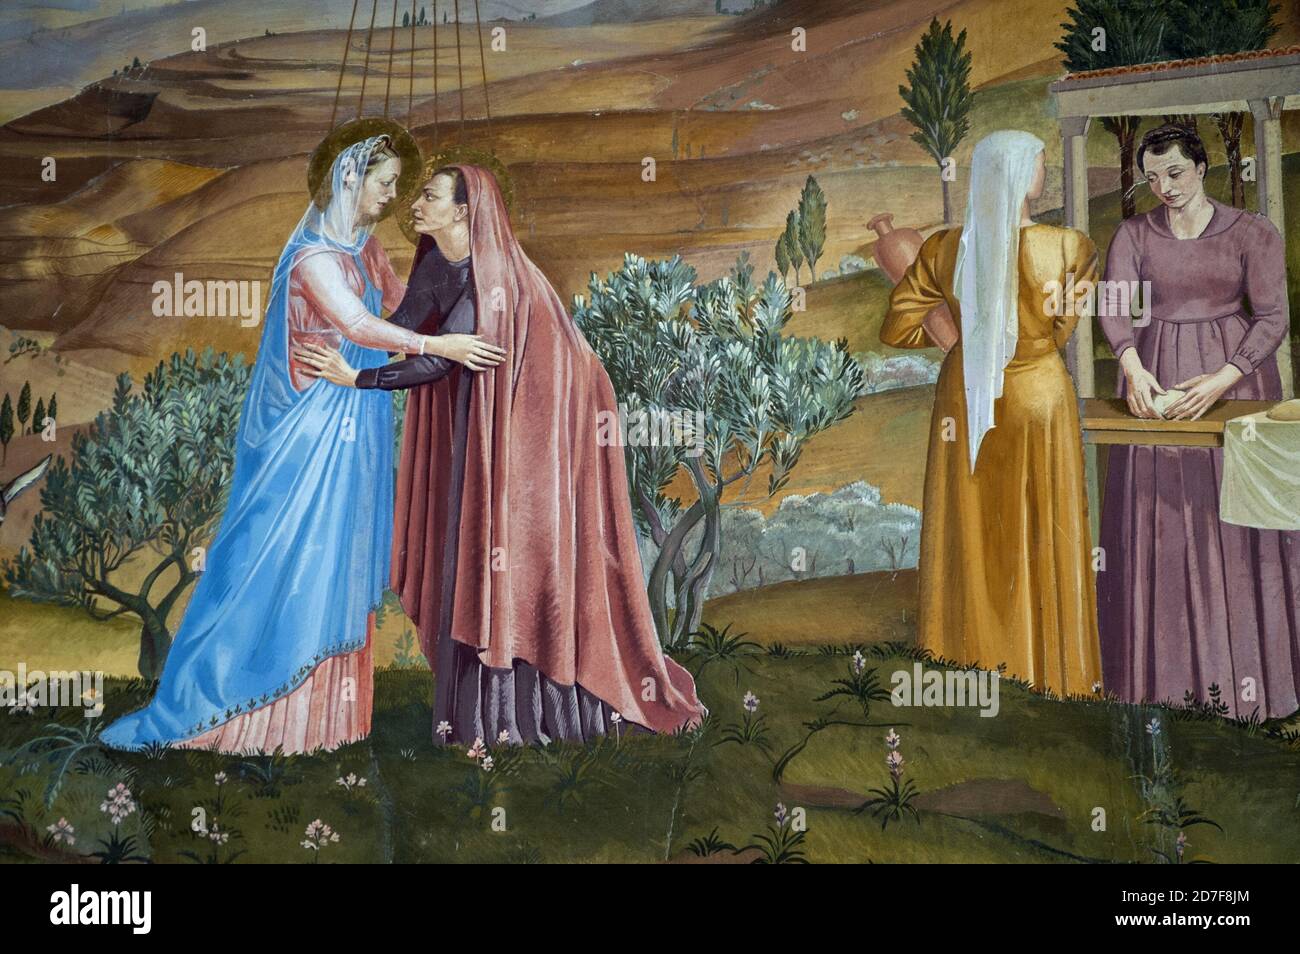 עין כרם, Ein Karem, عين كارم, Israel, Izrael, ישראל; Church of the Visitation; Fresco depicting the meeting of Mary and Elizabeth. Stock Photo